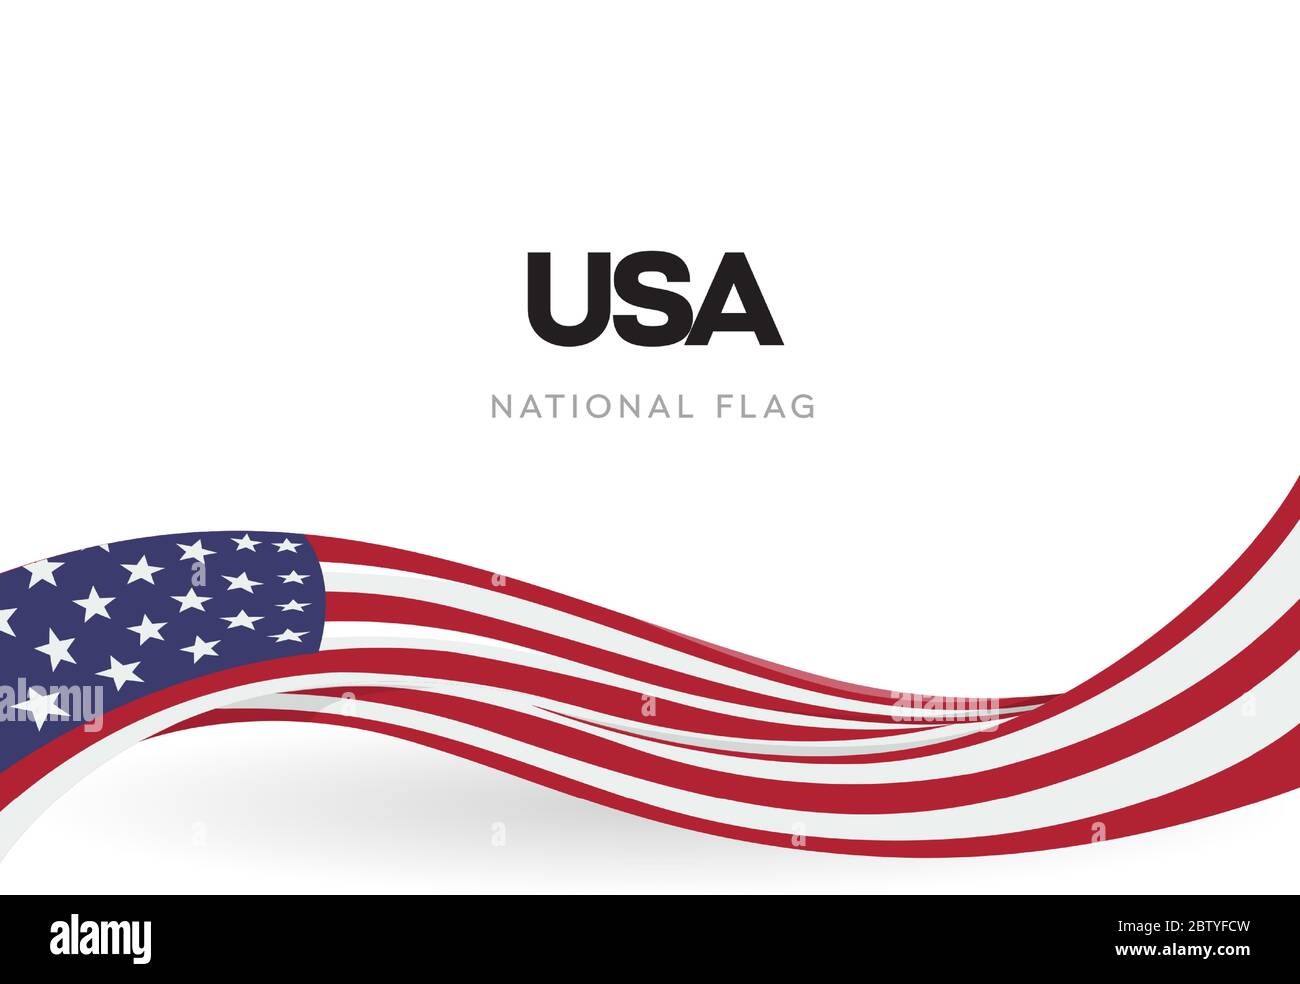 Die USA winken Flagge Banner. Das patriotische Band Poster der Vereinigten Staaten von Amerika. Der Tag der Unabhängigkeit Jubiläums-Broschüre.der 4. Juli national Stock Vektor